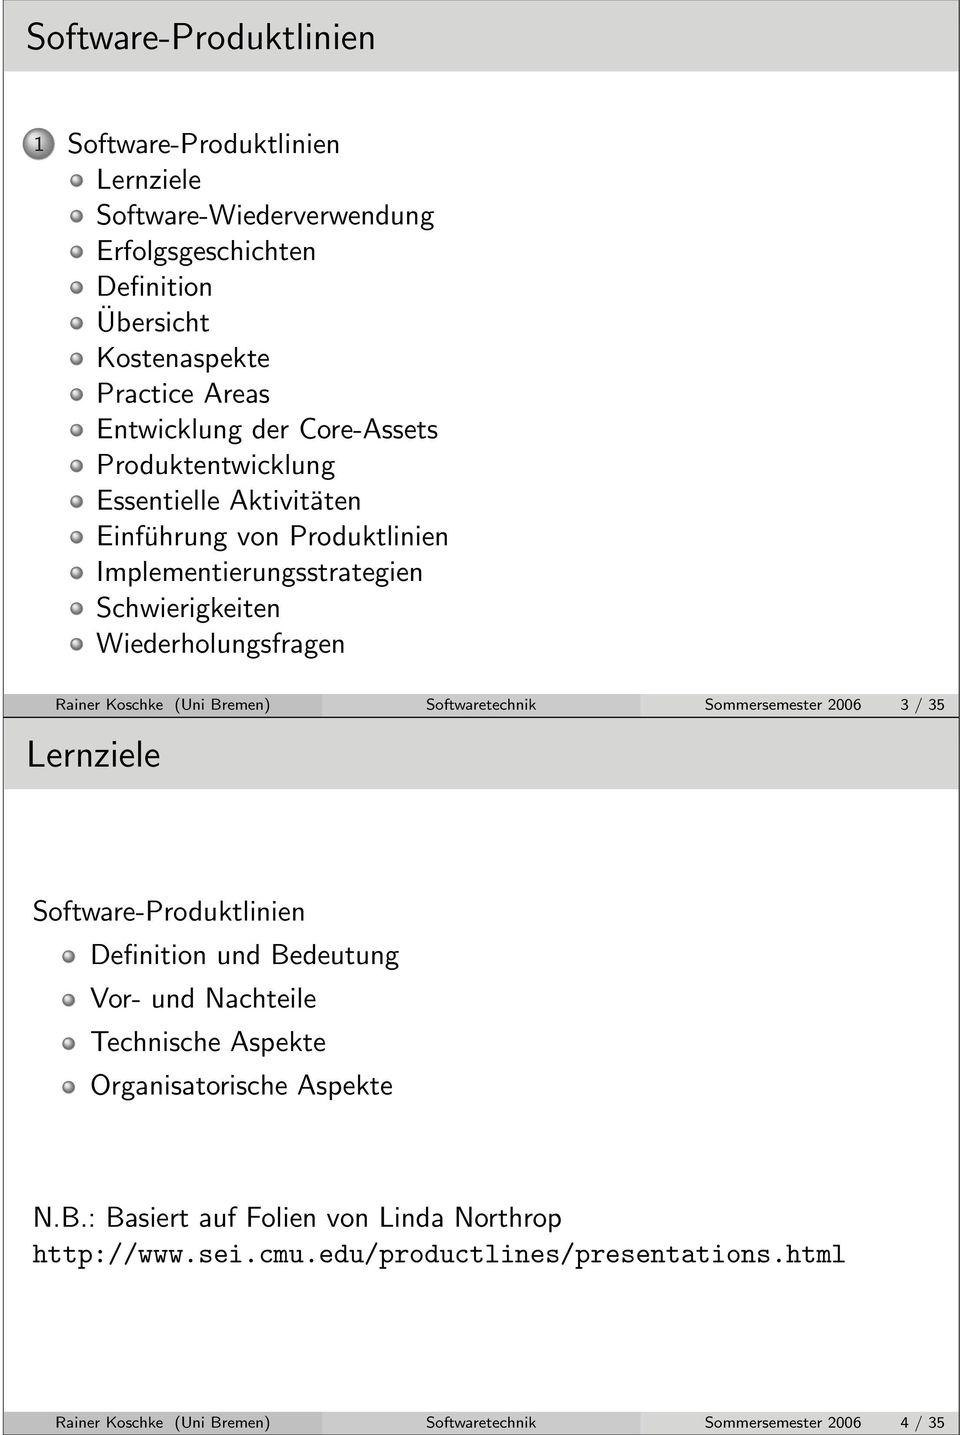 Bremen) Softwaretechnik Sommersemester 2006 3 / 35 Software-Produktlinien: Lernziele Lernziele Software-Produktlinien Definition und Bedeutung Vor- und Nachteile Technische Aspekte